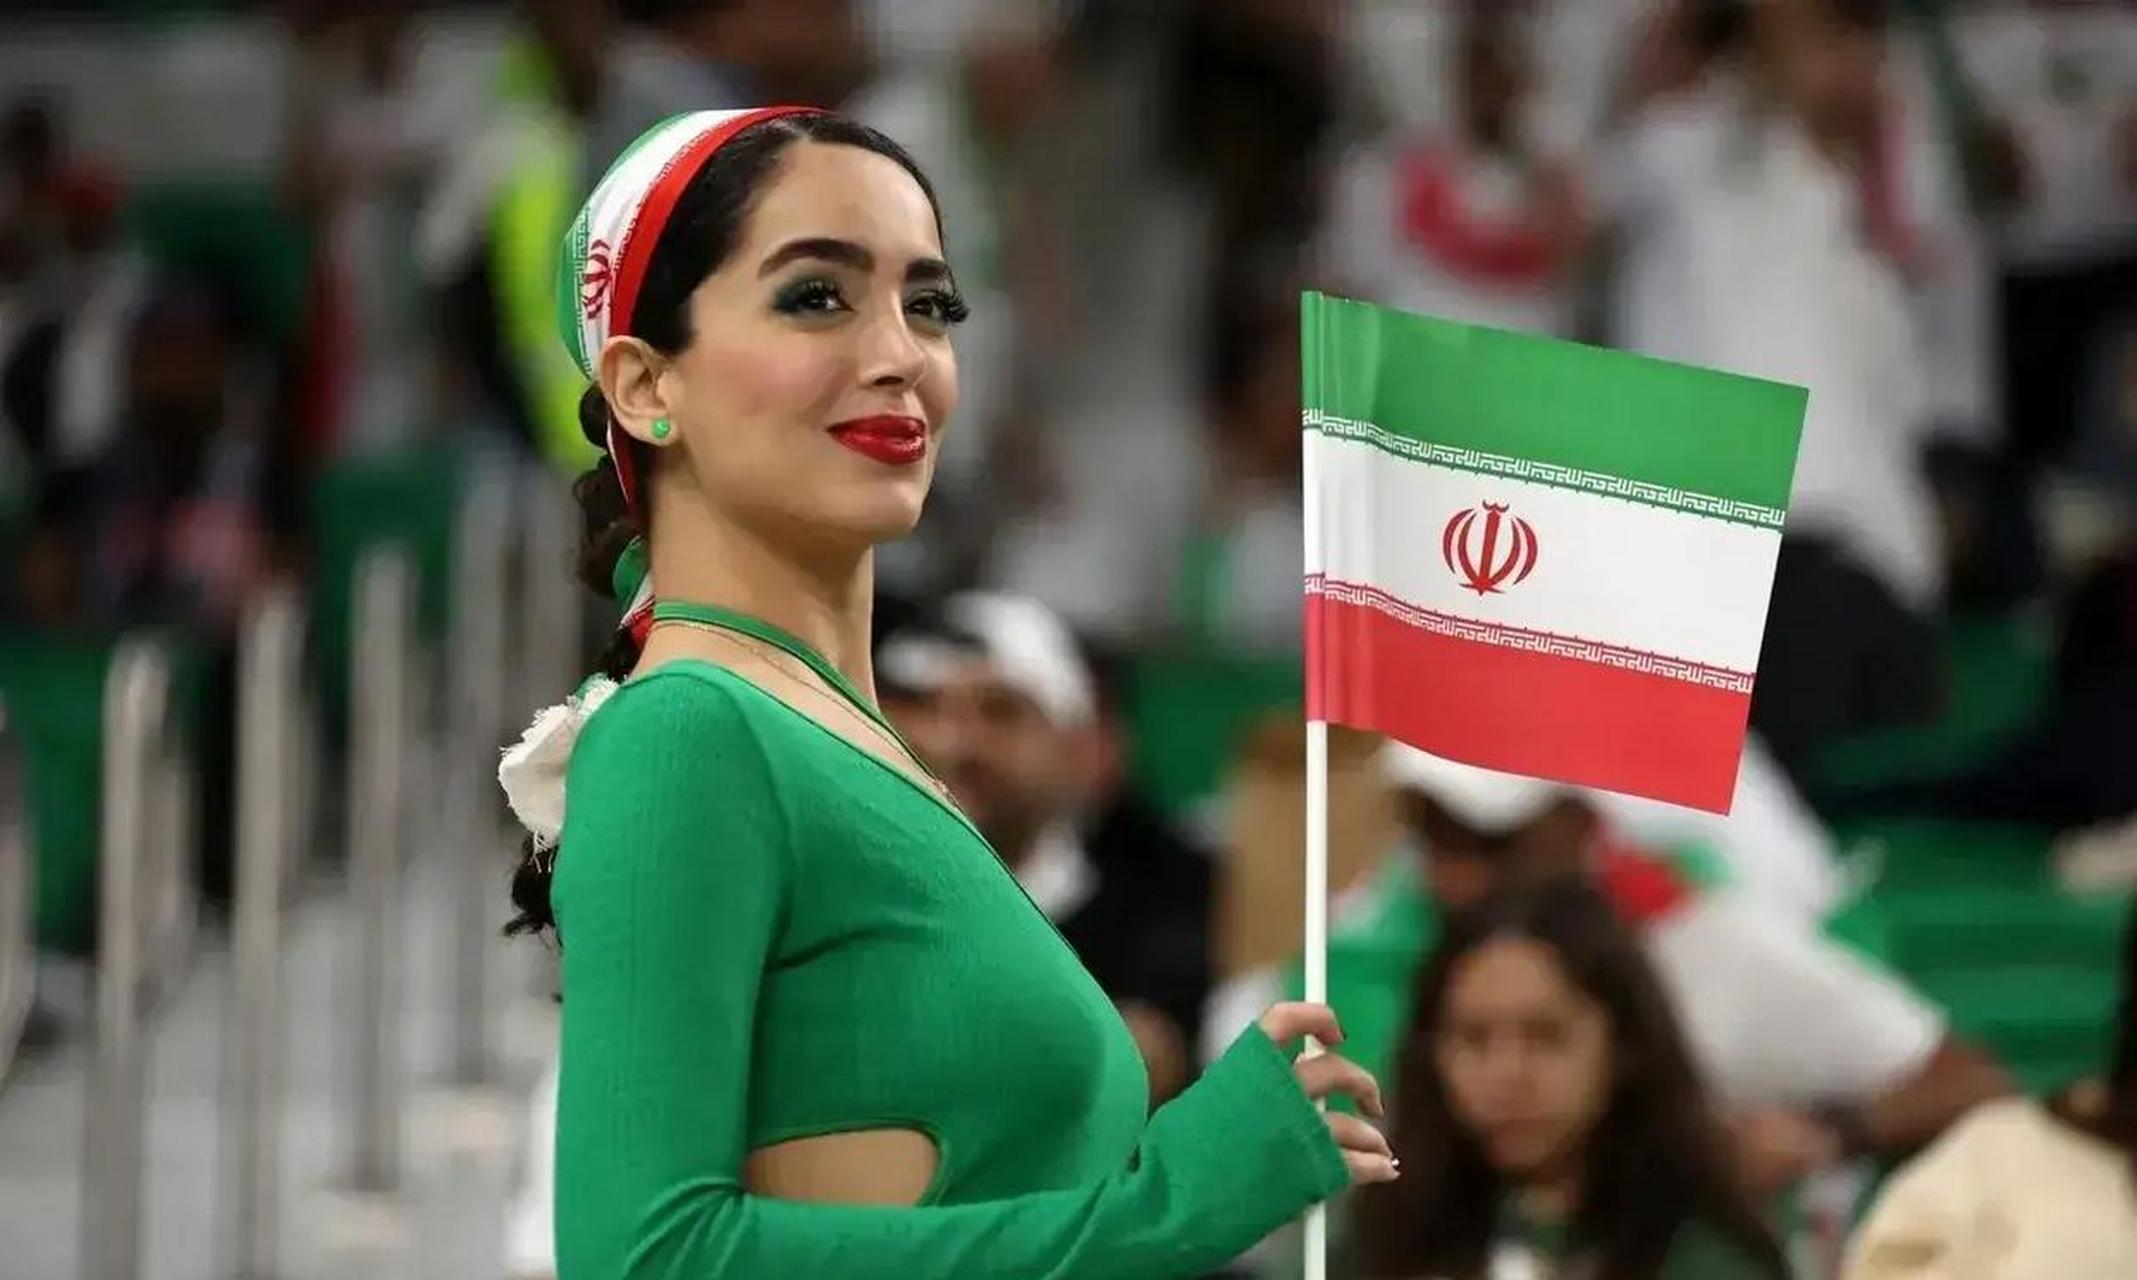 伊朗女球迷都这么开放了吗?